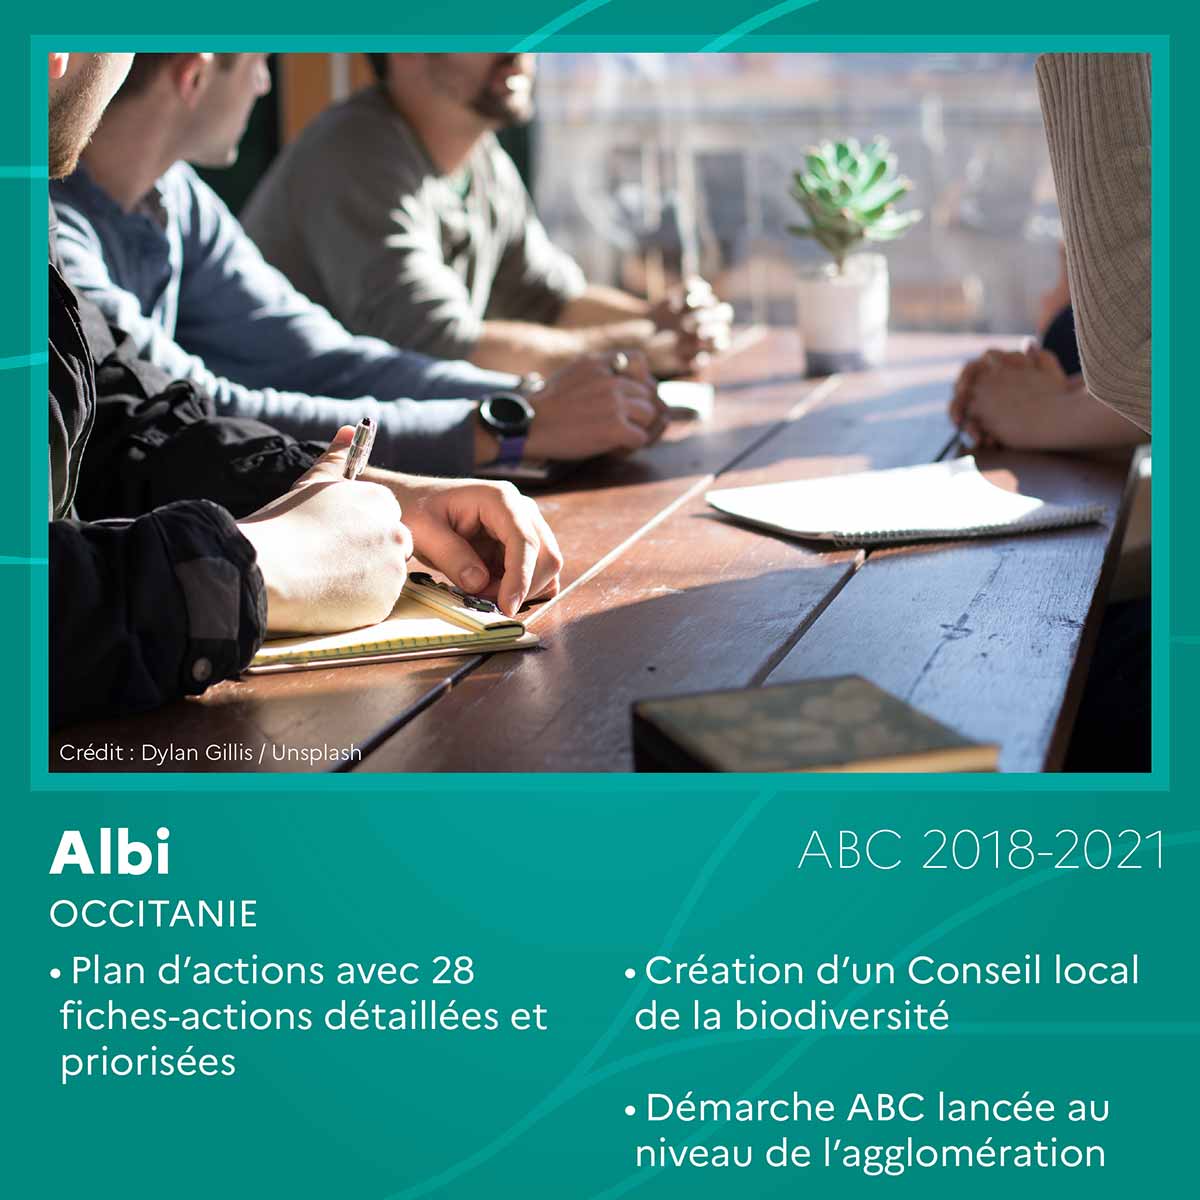 Albi (Occitanie)